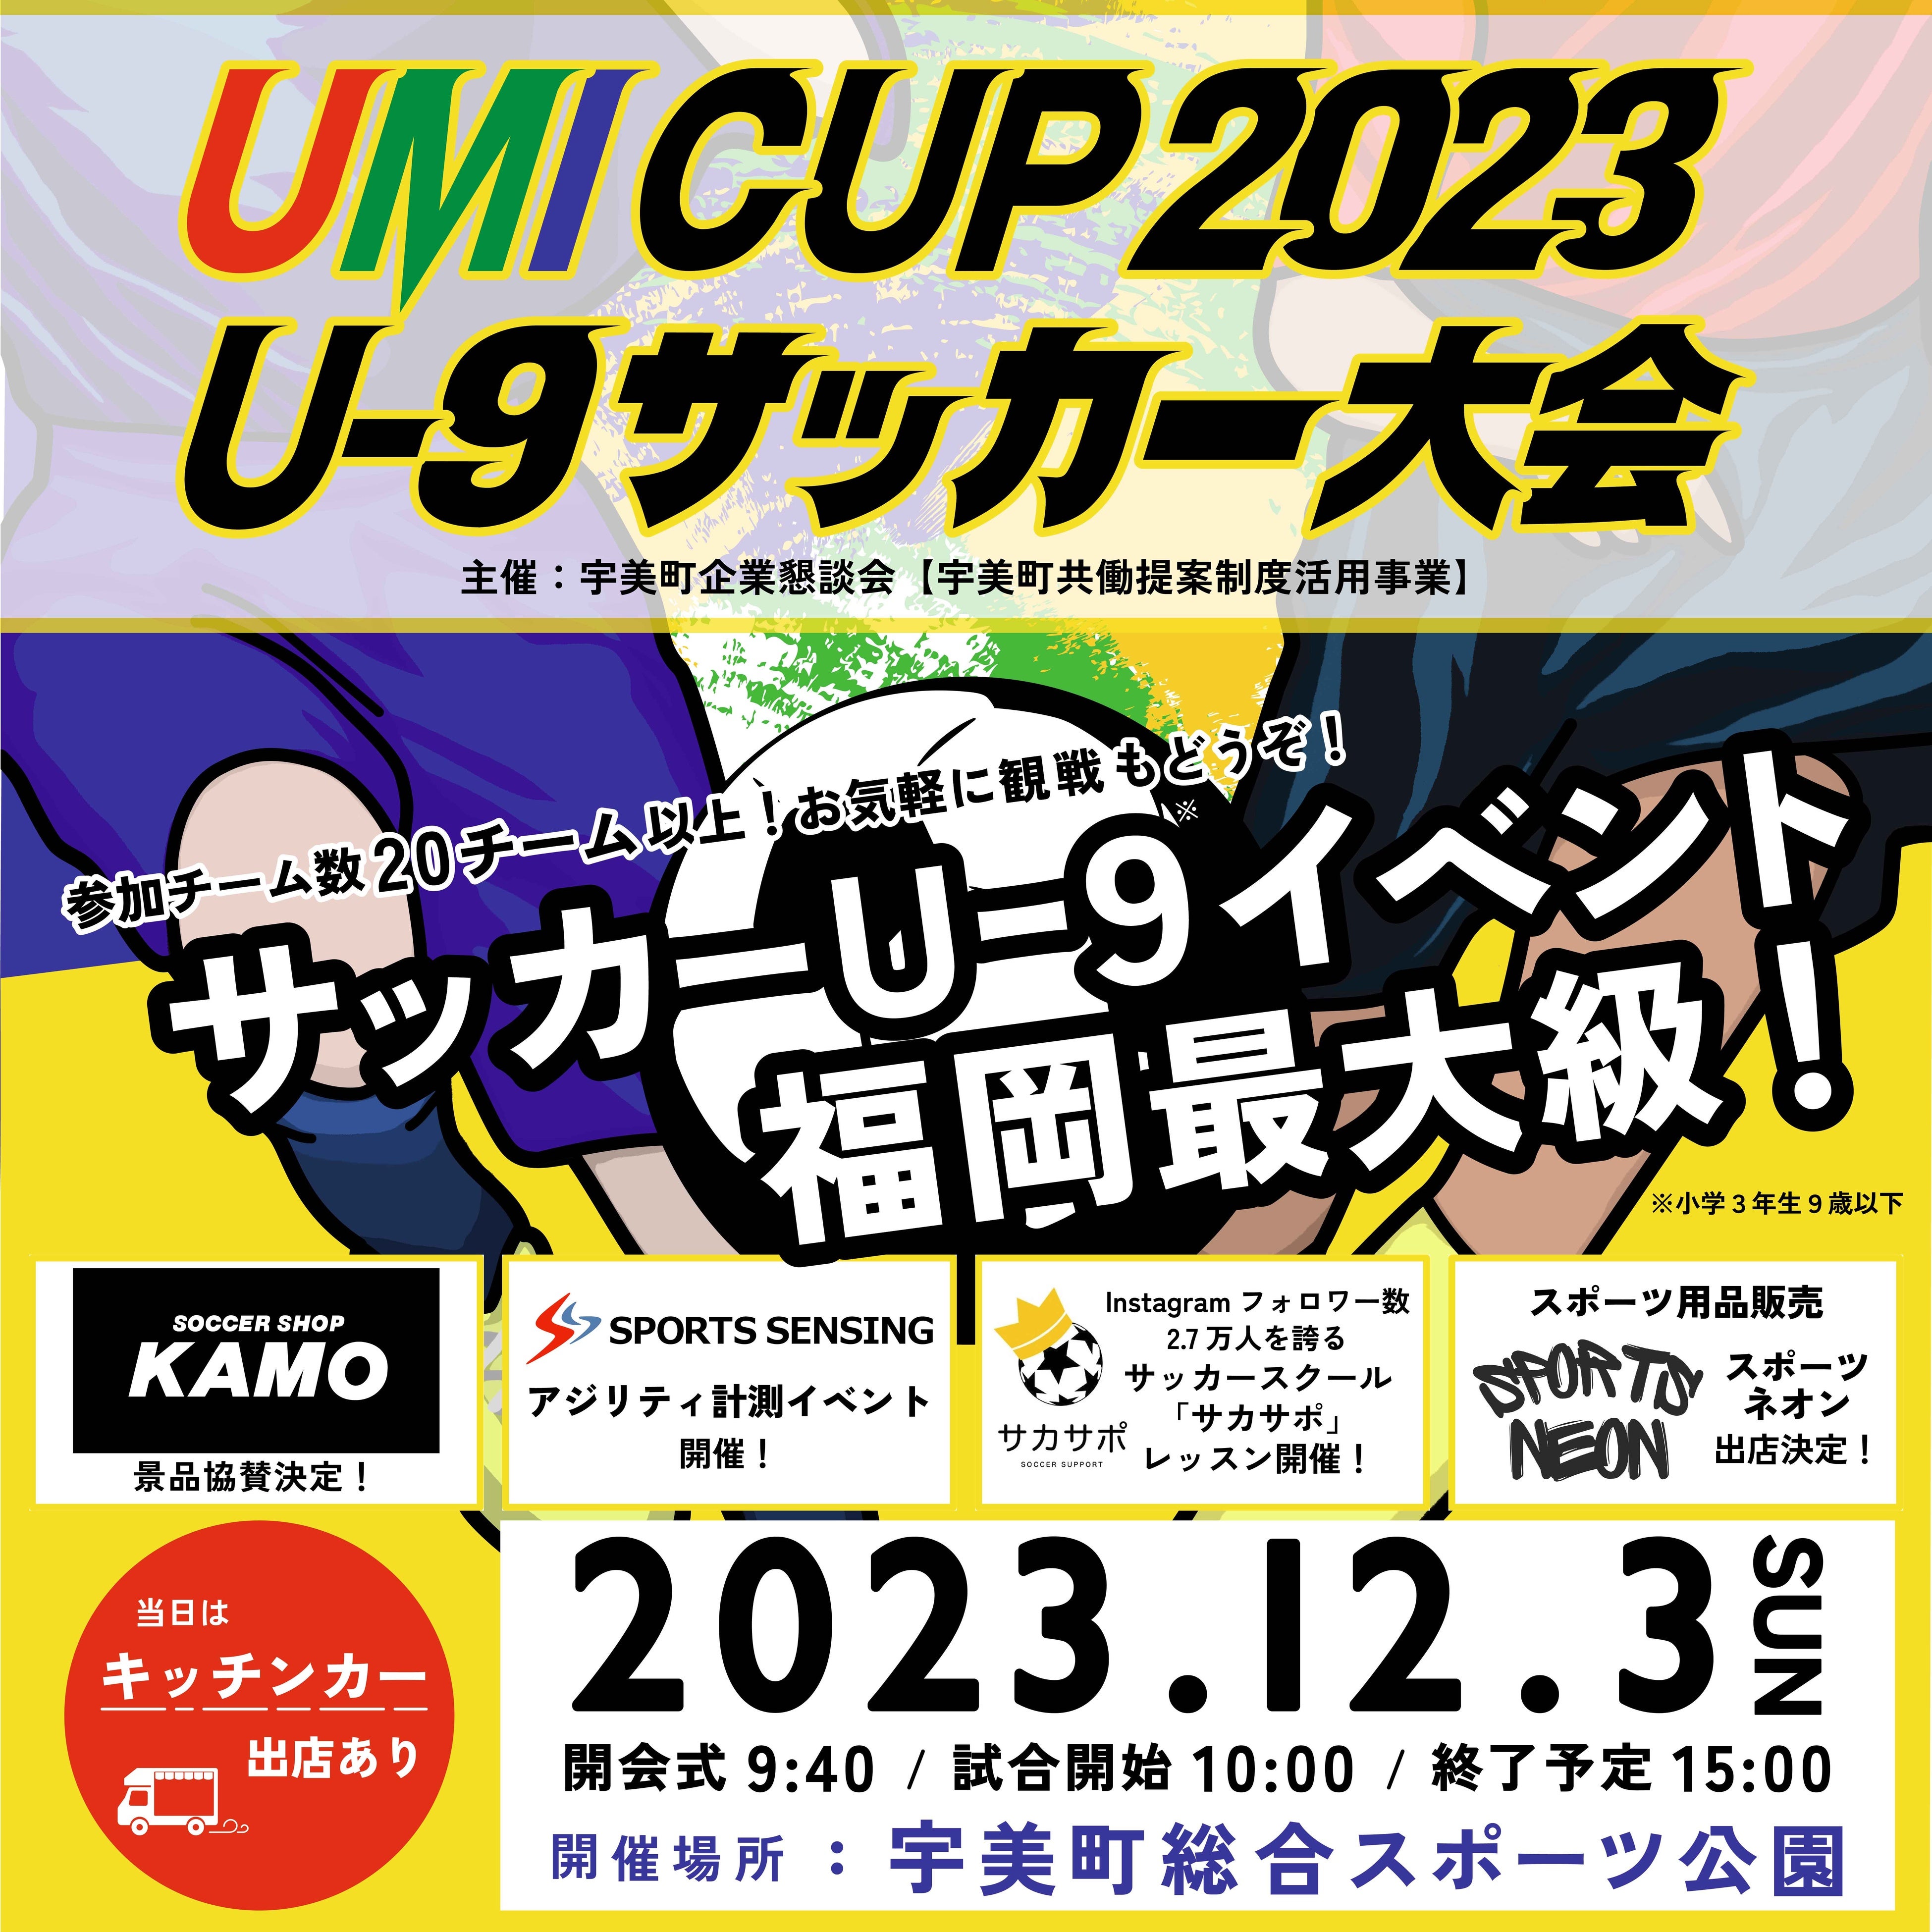 gY݂̒nh FAqĐɑuP UMI CUP 2023 U-9TbJ[vJÁI